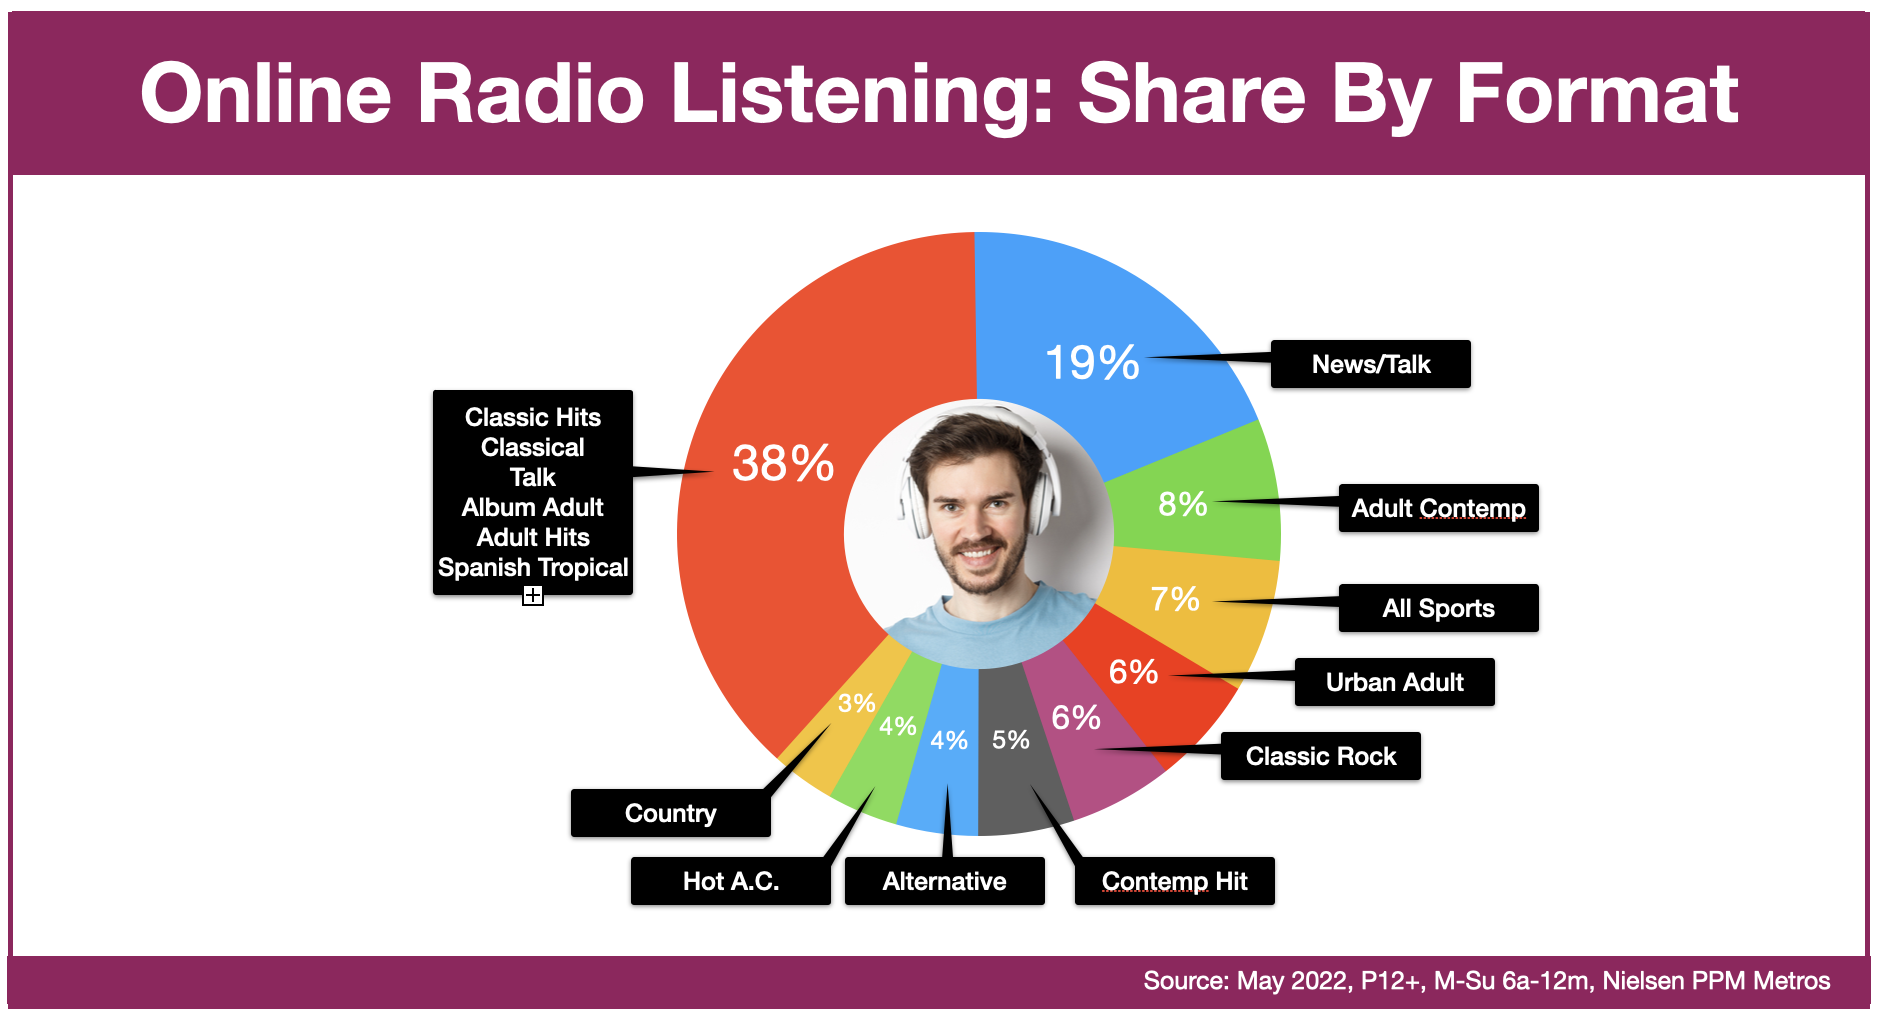 Advertise In Las Vegas: Online Radio Listening By Format